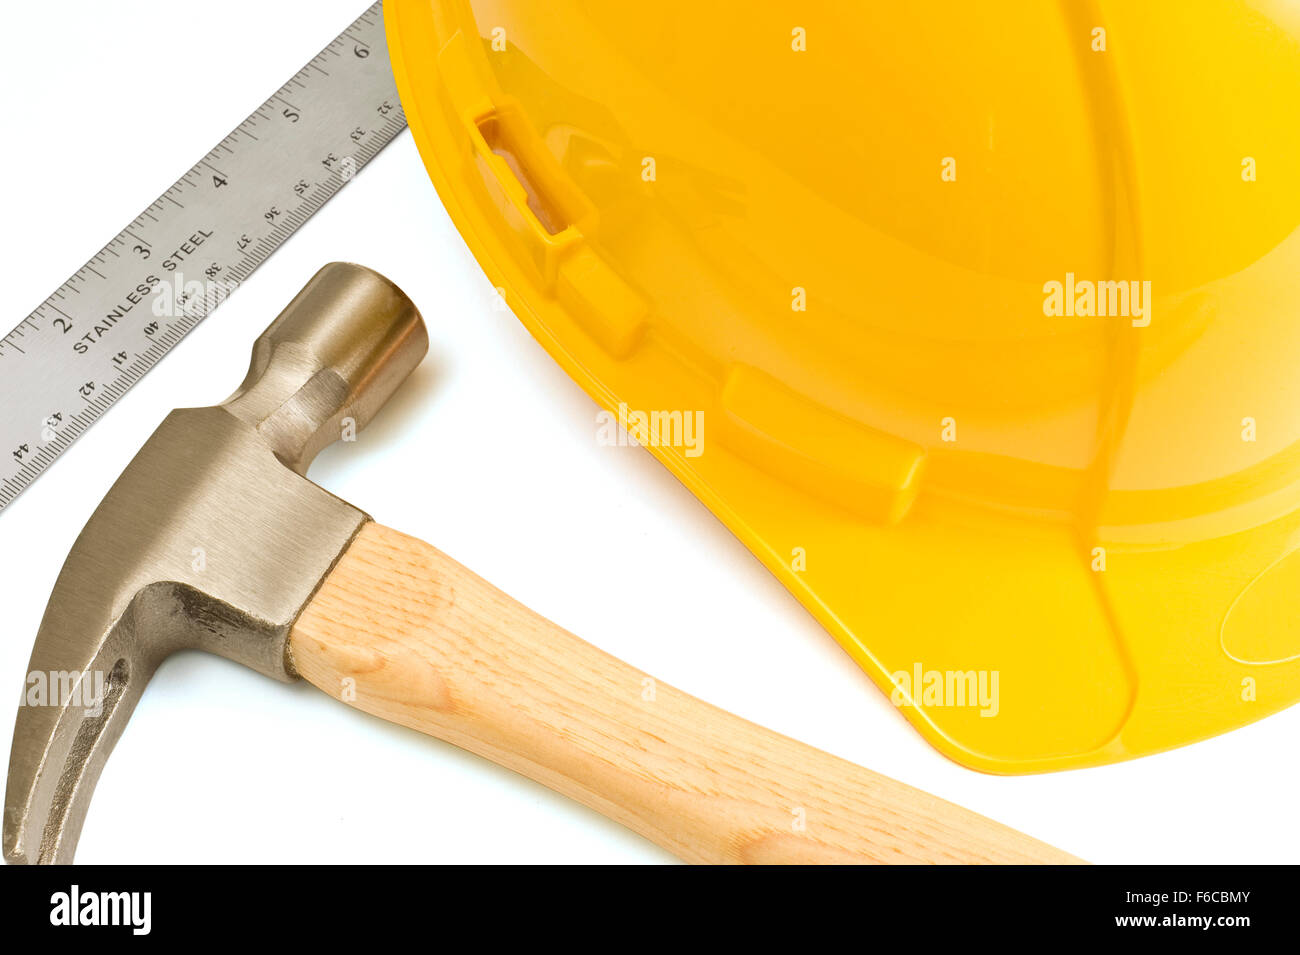 Bau Bild ein Metall-Lineal, einen Hammer und einen gelben Bauarbeiterhelm. Stockfoto